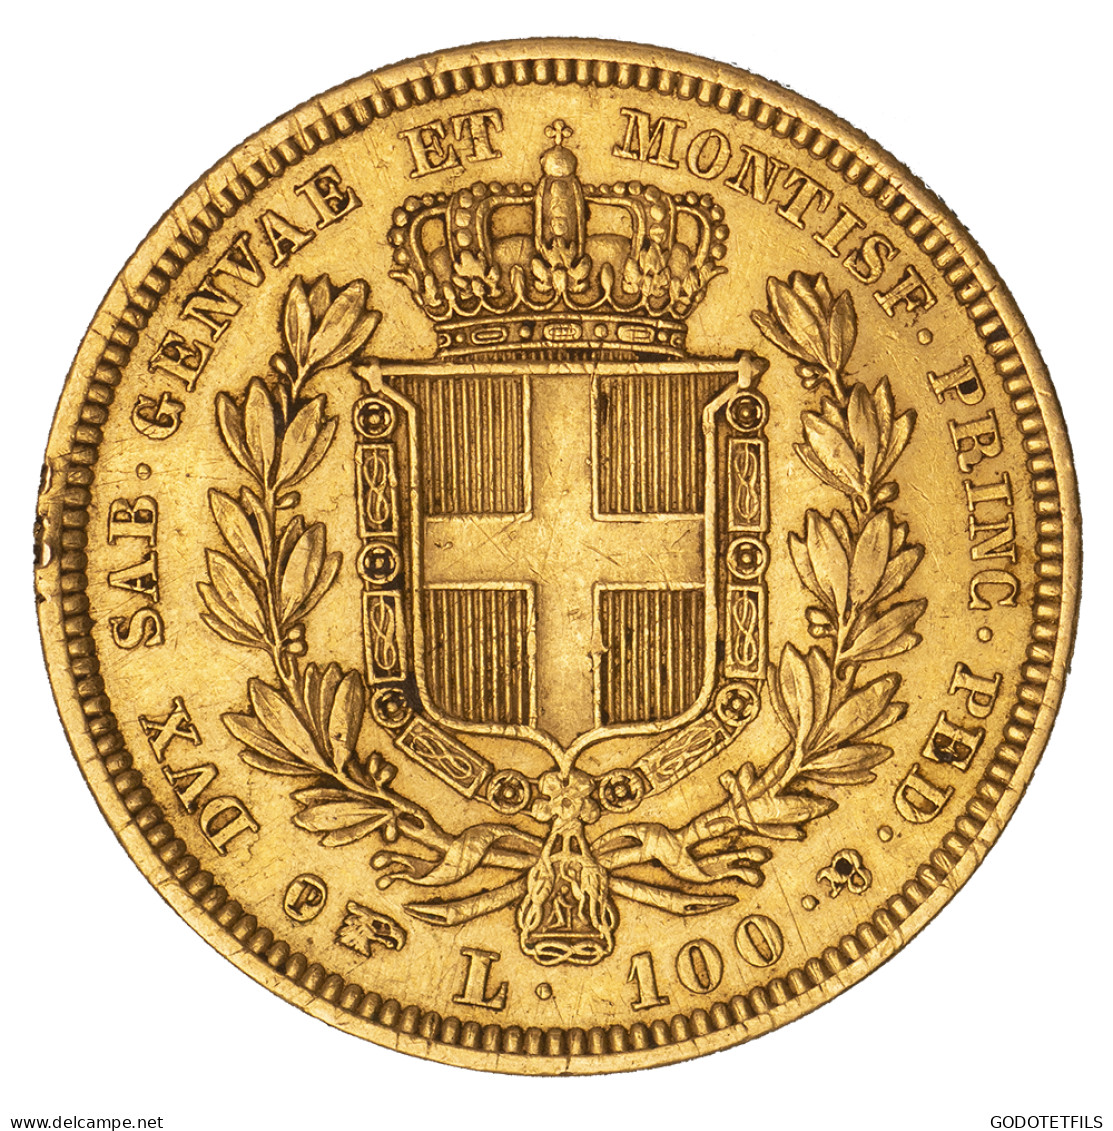 Royaume De Sardaigne-100 Lire Charles-Albert 1834 Turin - Piémont-Sardaigne-Savoie Italienne